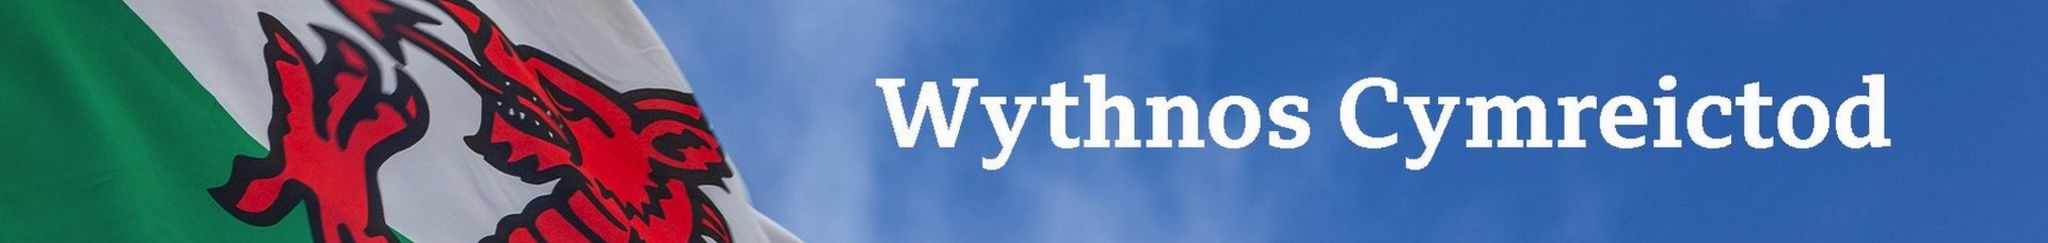 Wytnos Cymreictod Cymru Fyw